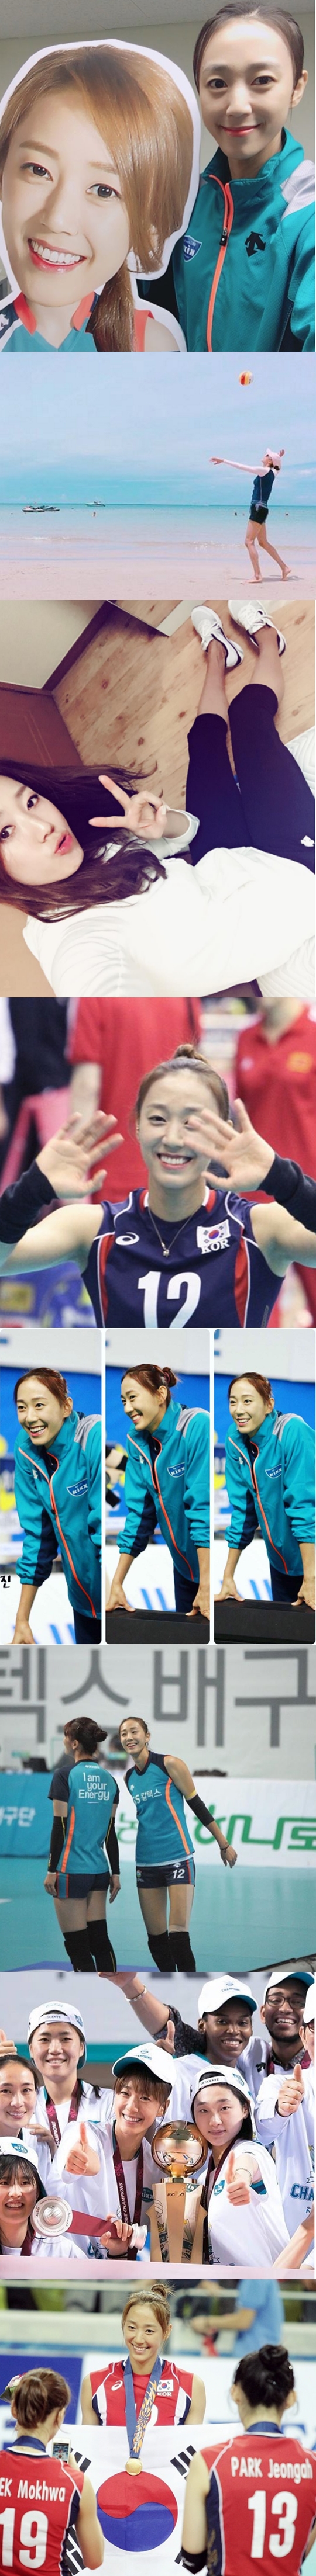 여자프로배구를 대표하는 미녀, 한송이(사진=인스타그램)